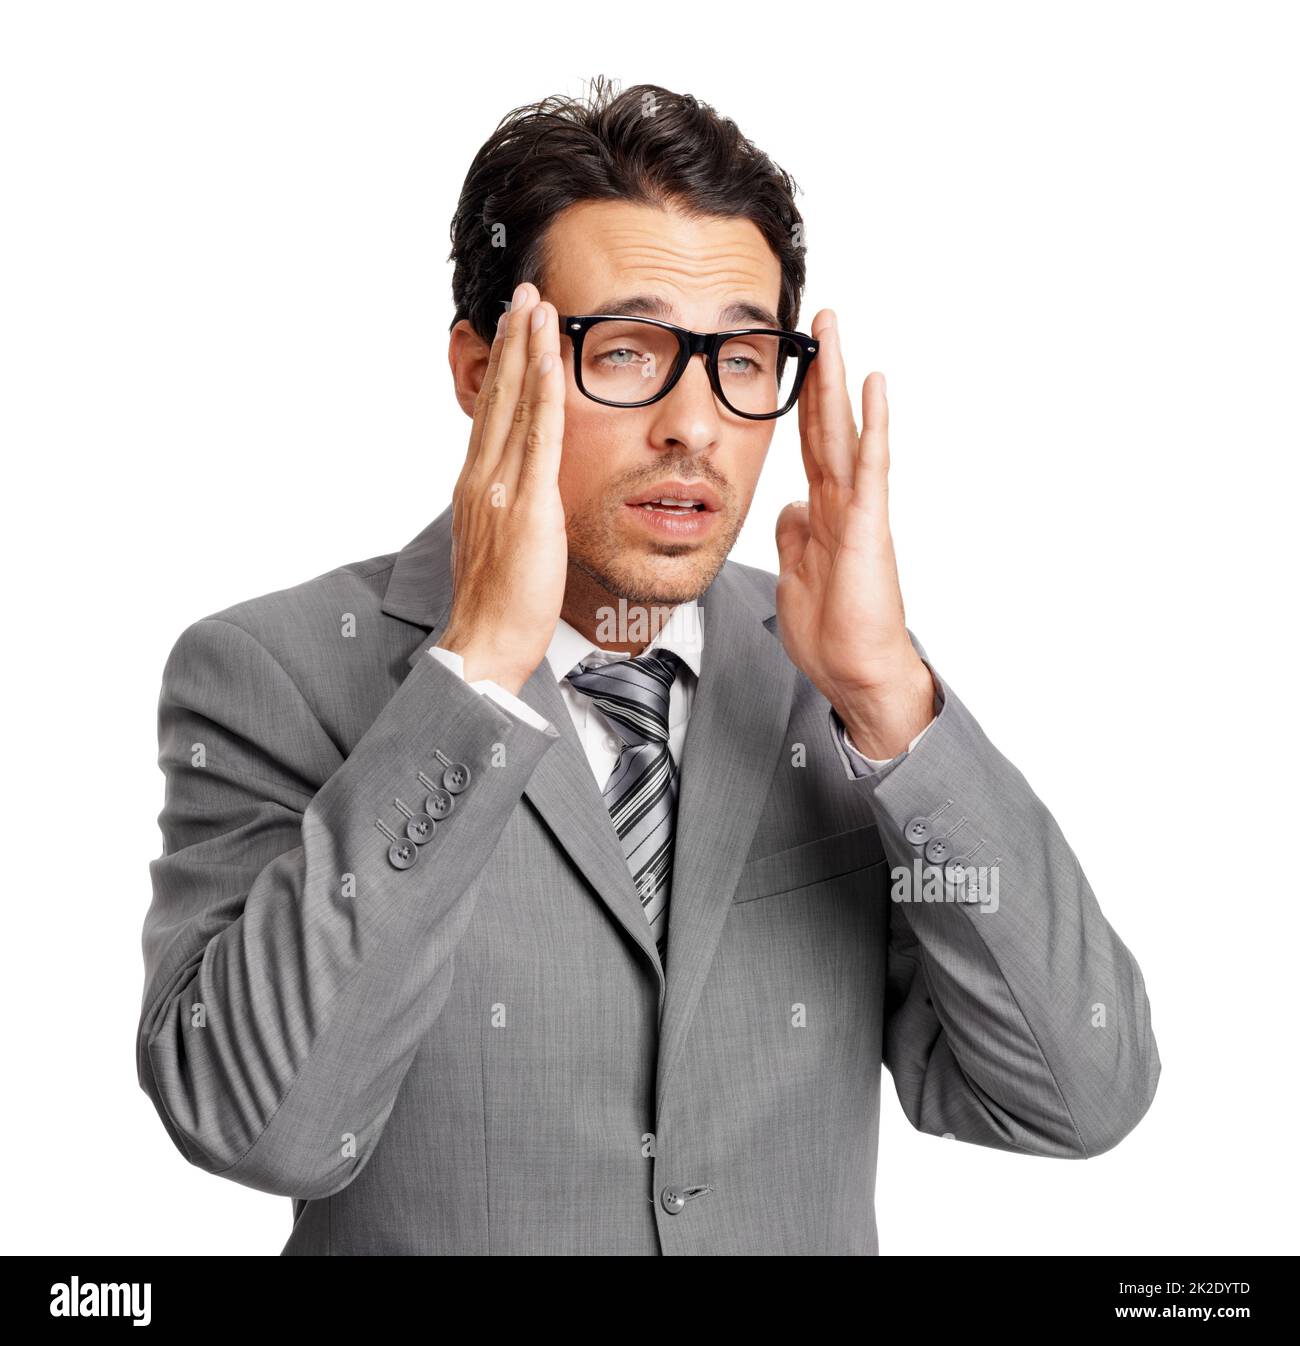 Il mio cervello è addormentato. Un giovane dirigente dagli occhi imbianchiti che indossa i suoi occhiali mentre è isolato su uno sfondo bianco. Foto Stock